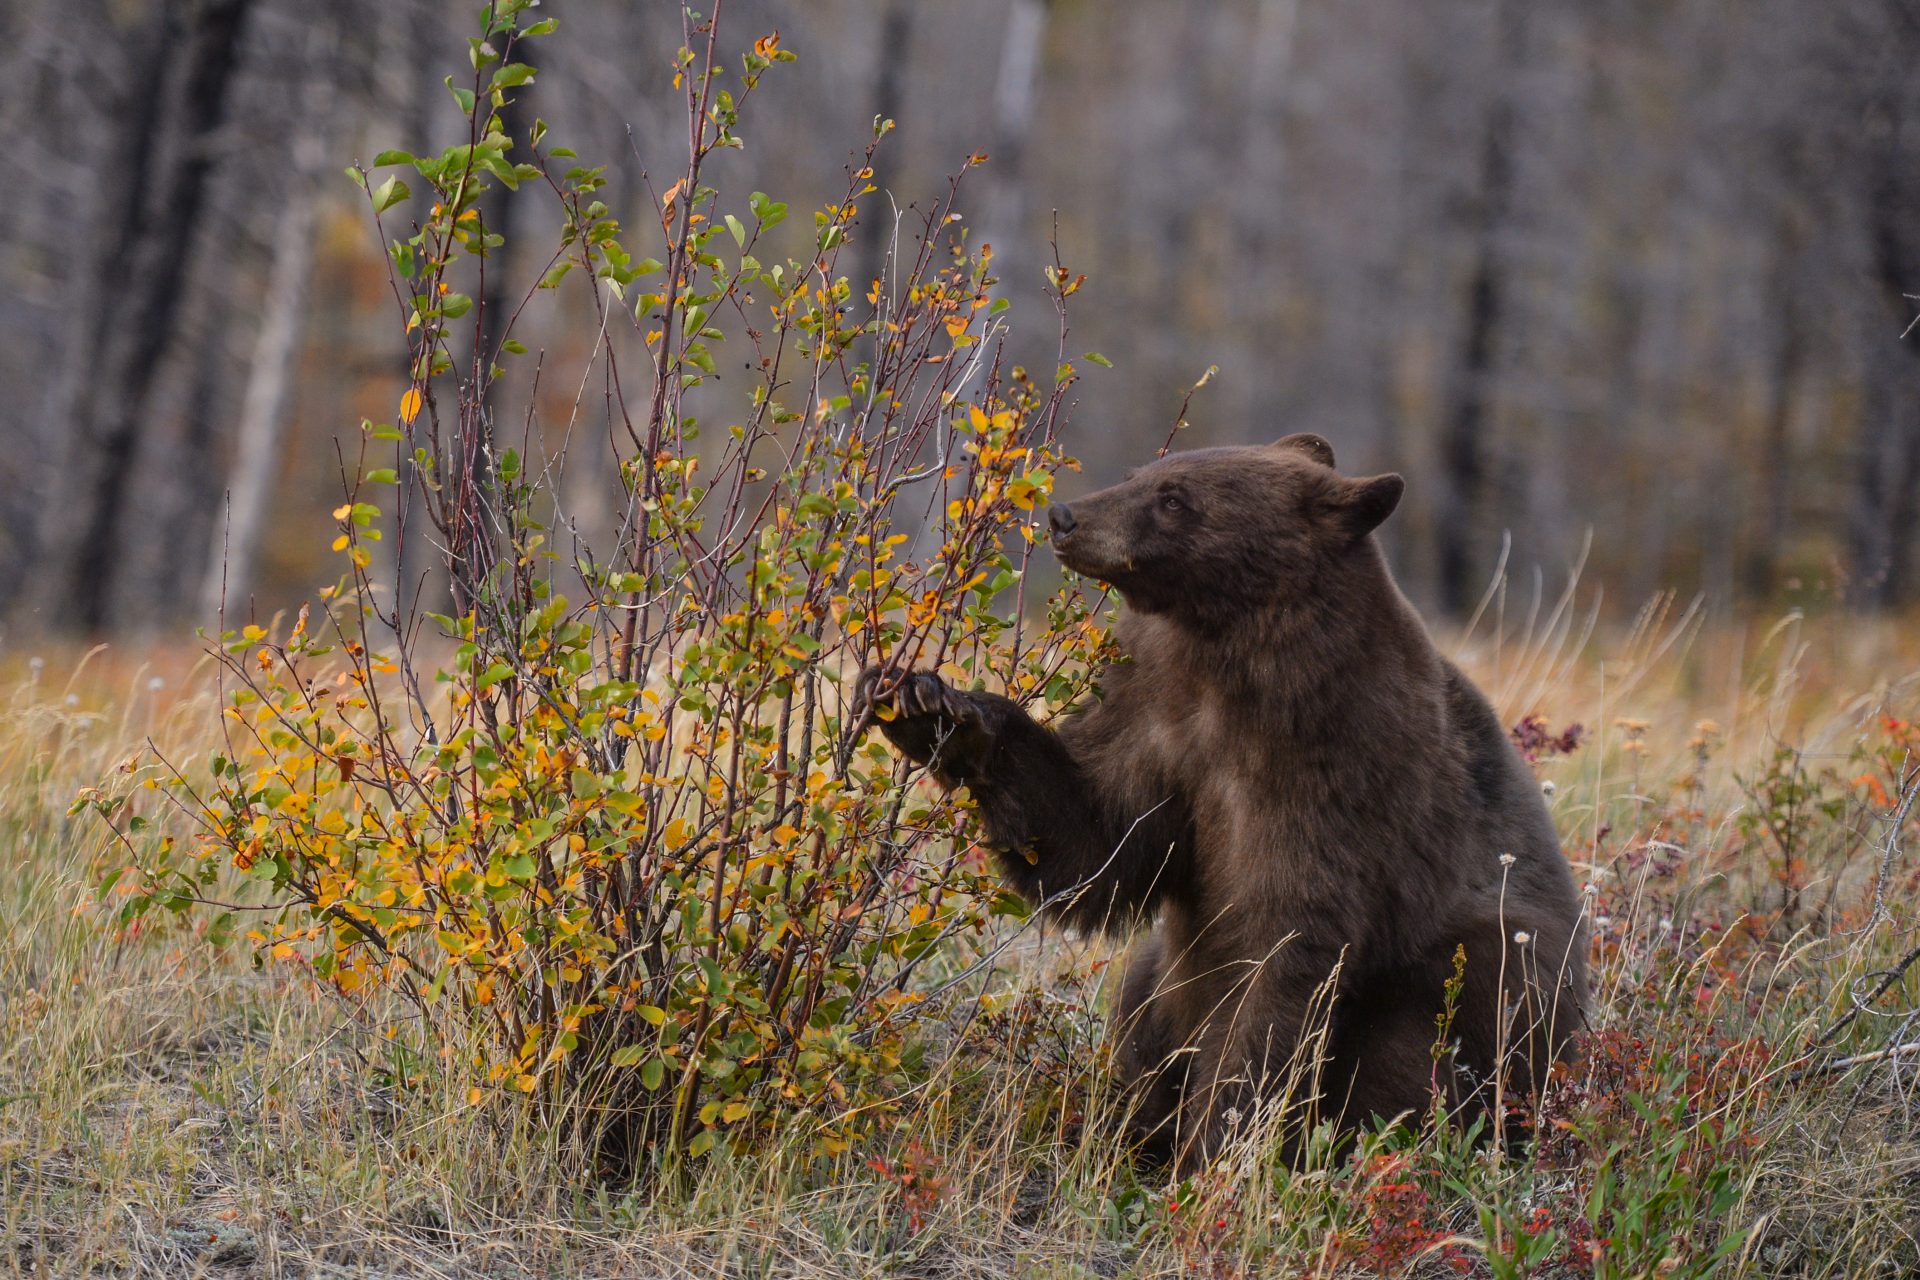 Utile : comment survivre si vous tombez nez à nez avec un ours ?